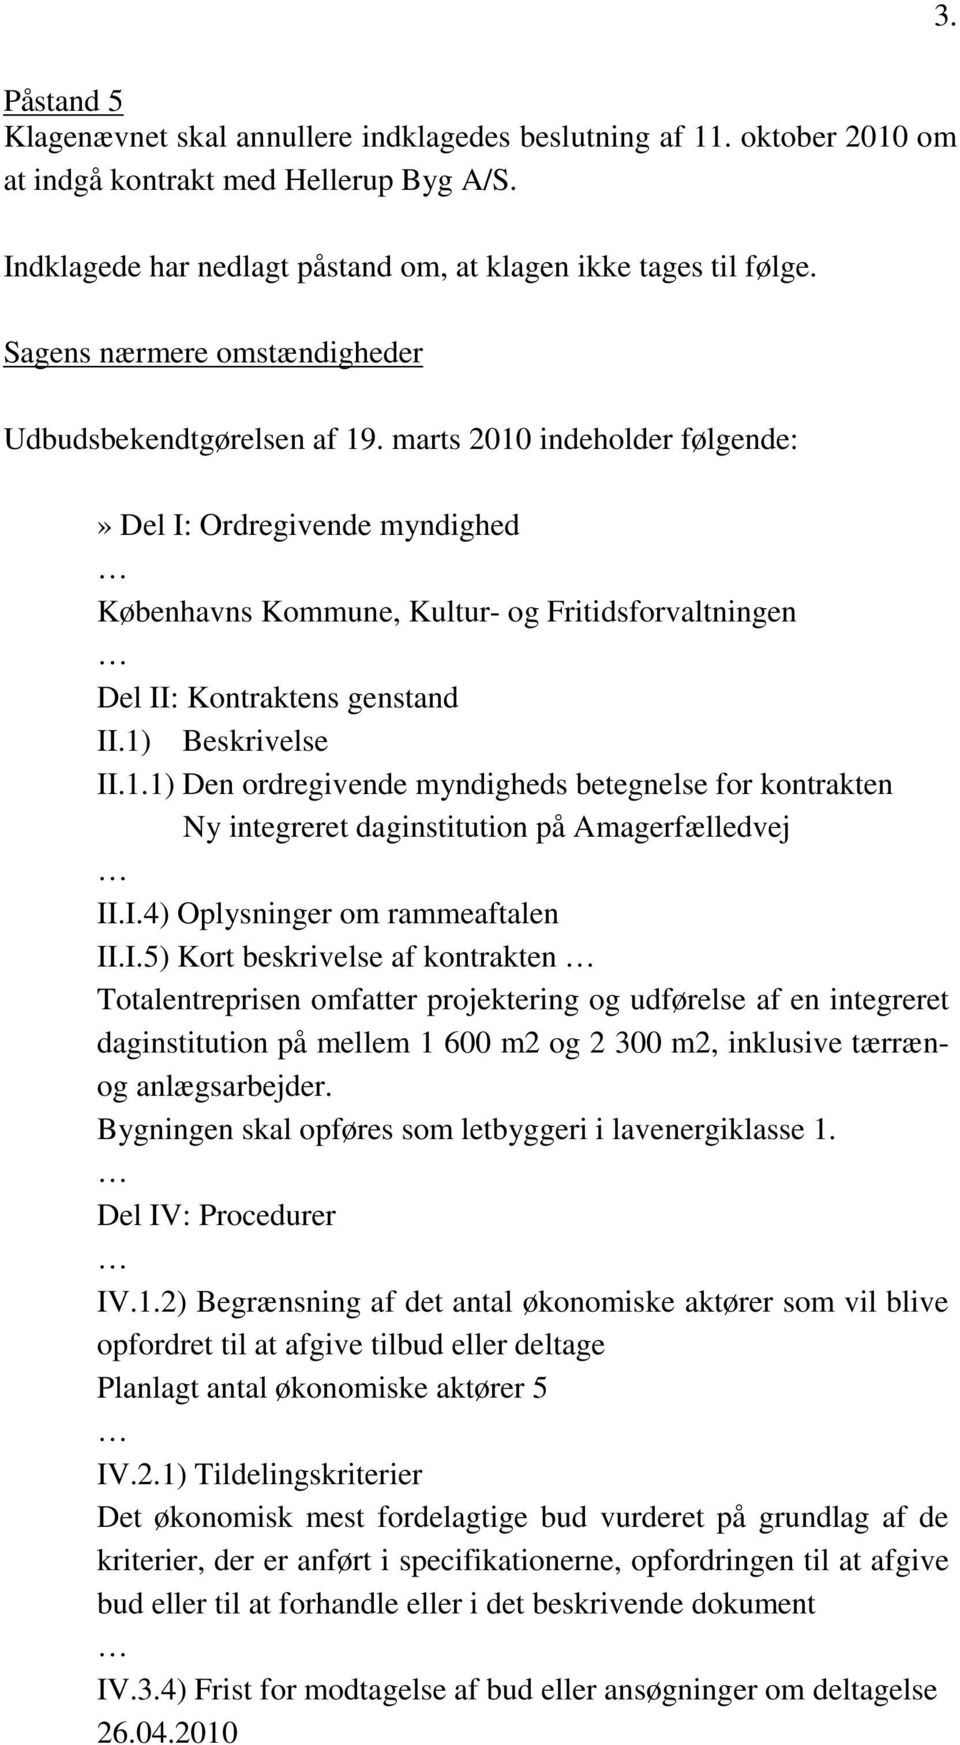 marts 2010 indeholder følgende:» Del I: Ordregivende myndighed Københavns Kommune, Kultur- og Fritidsforvaltningen Del II: Kontraktens genstand II.1) Beskrivelse II.1.1) Den ordregivende myndigheds betegnelse for kontrakten Ny integreret daginstitution på Amagerfælledvej II.